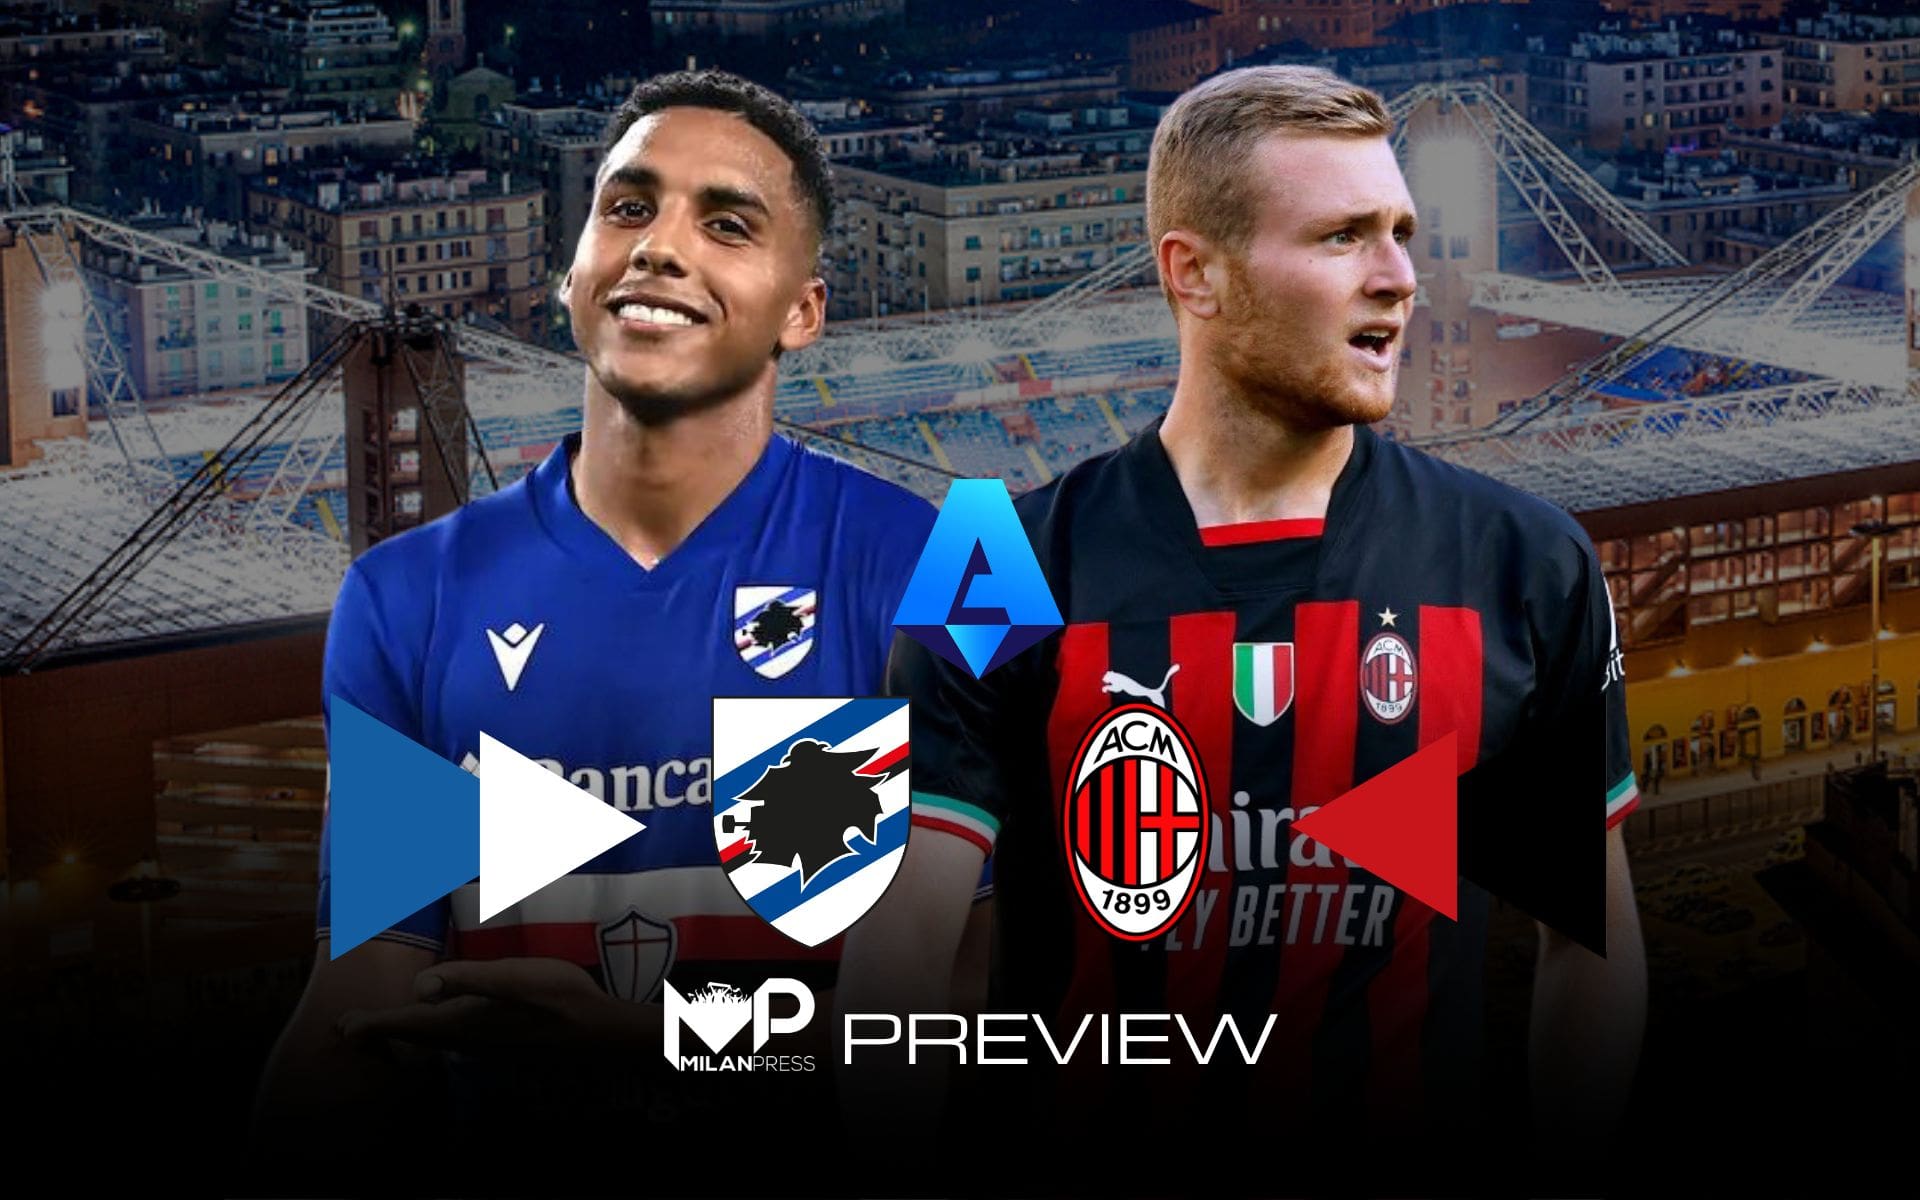 Sampdoria-Milan Preview - MilanPress, robe dell'altro diavolo